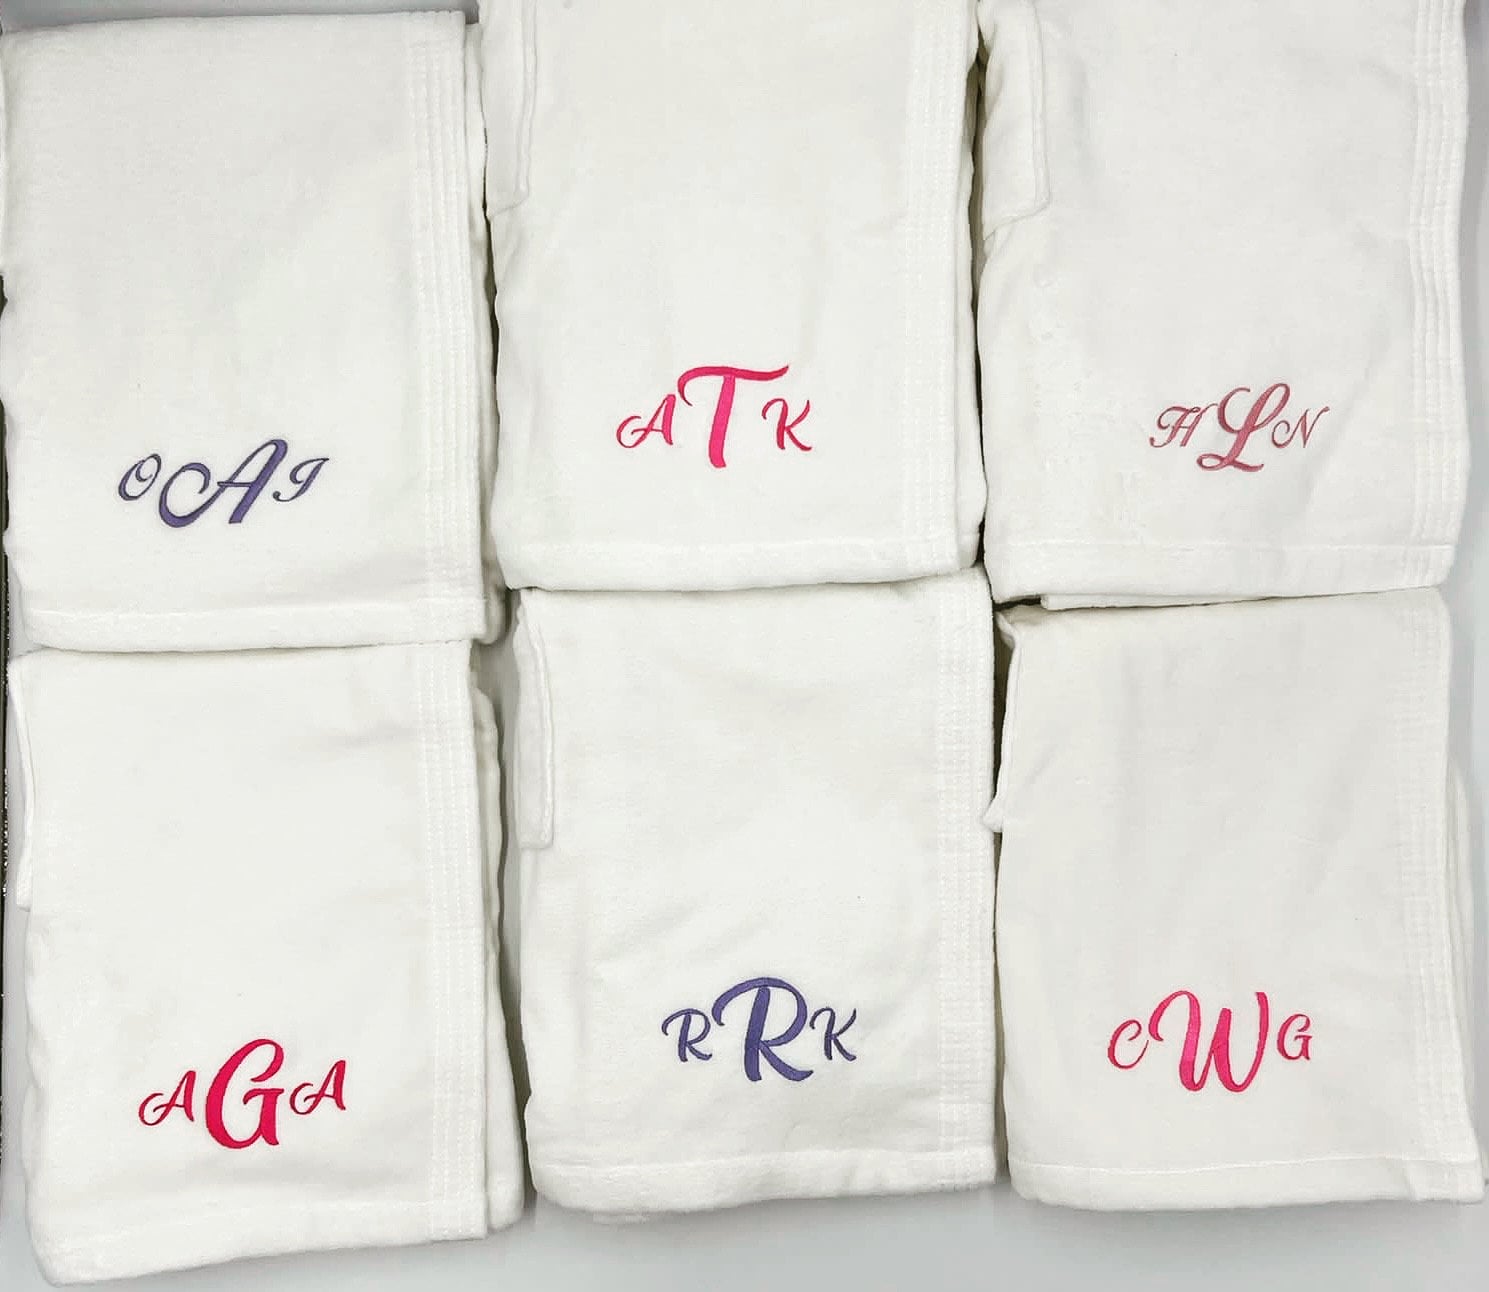 Towel Wrap Towels :: 100% Cotton Purple Terry Velour Cloth Spa